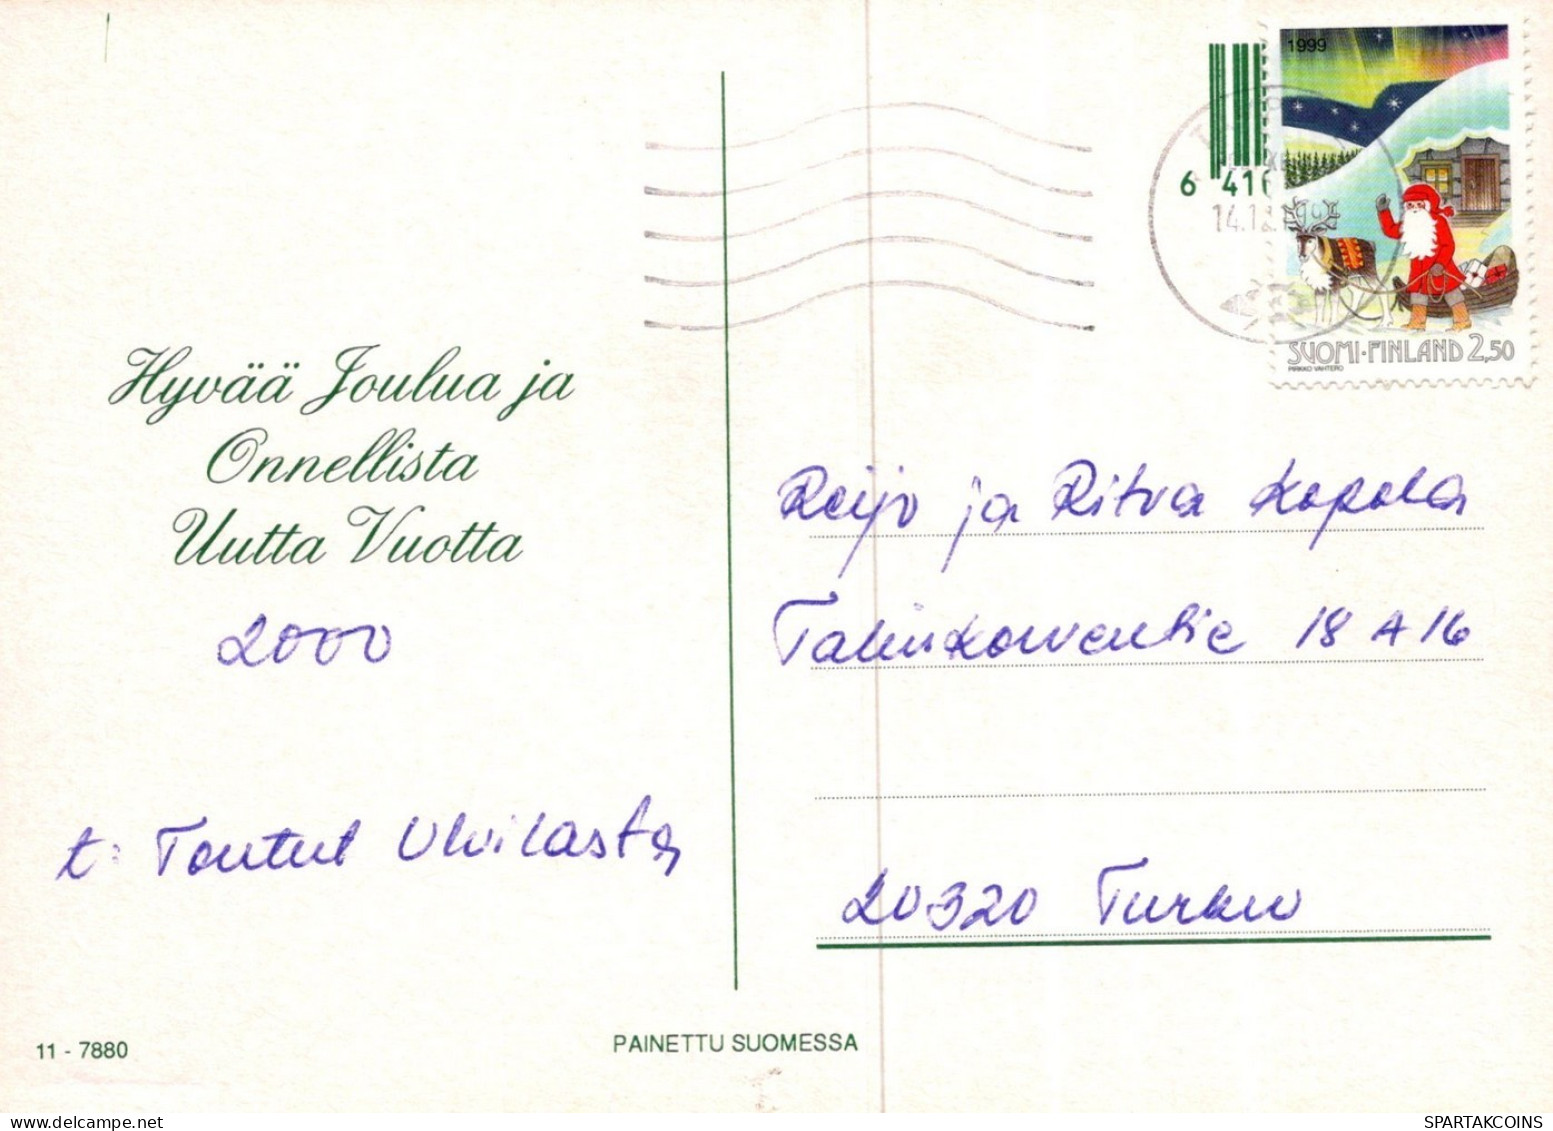 WEIHNACHTSMANN SANTA CLAUS WEIHNACHTSFERIEN Vintage Postkarte CPSM #PAK650.DE - Santa Claus